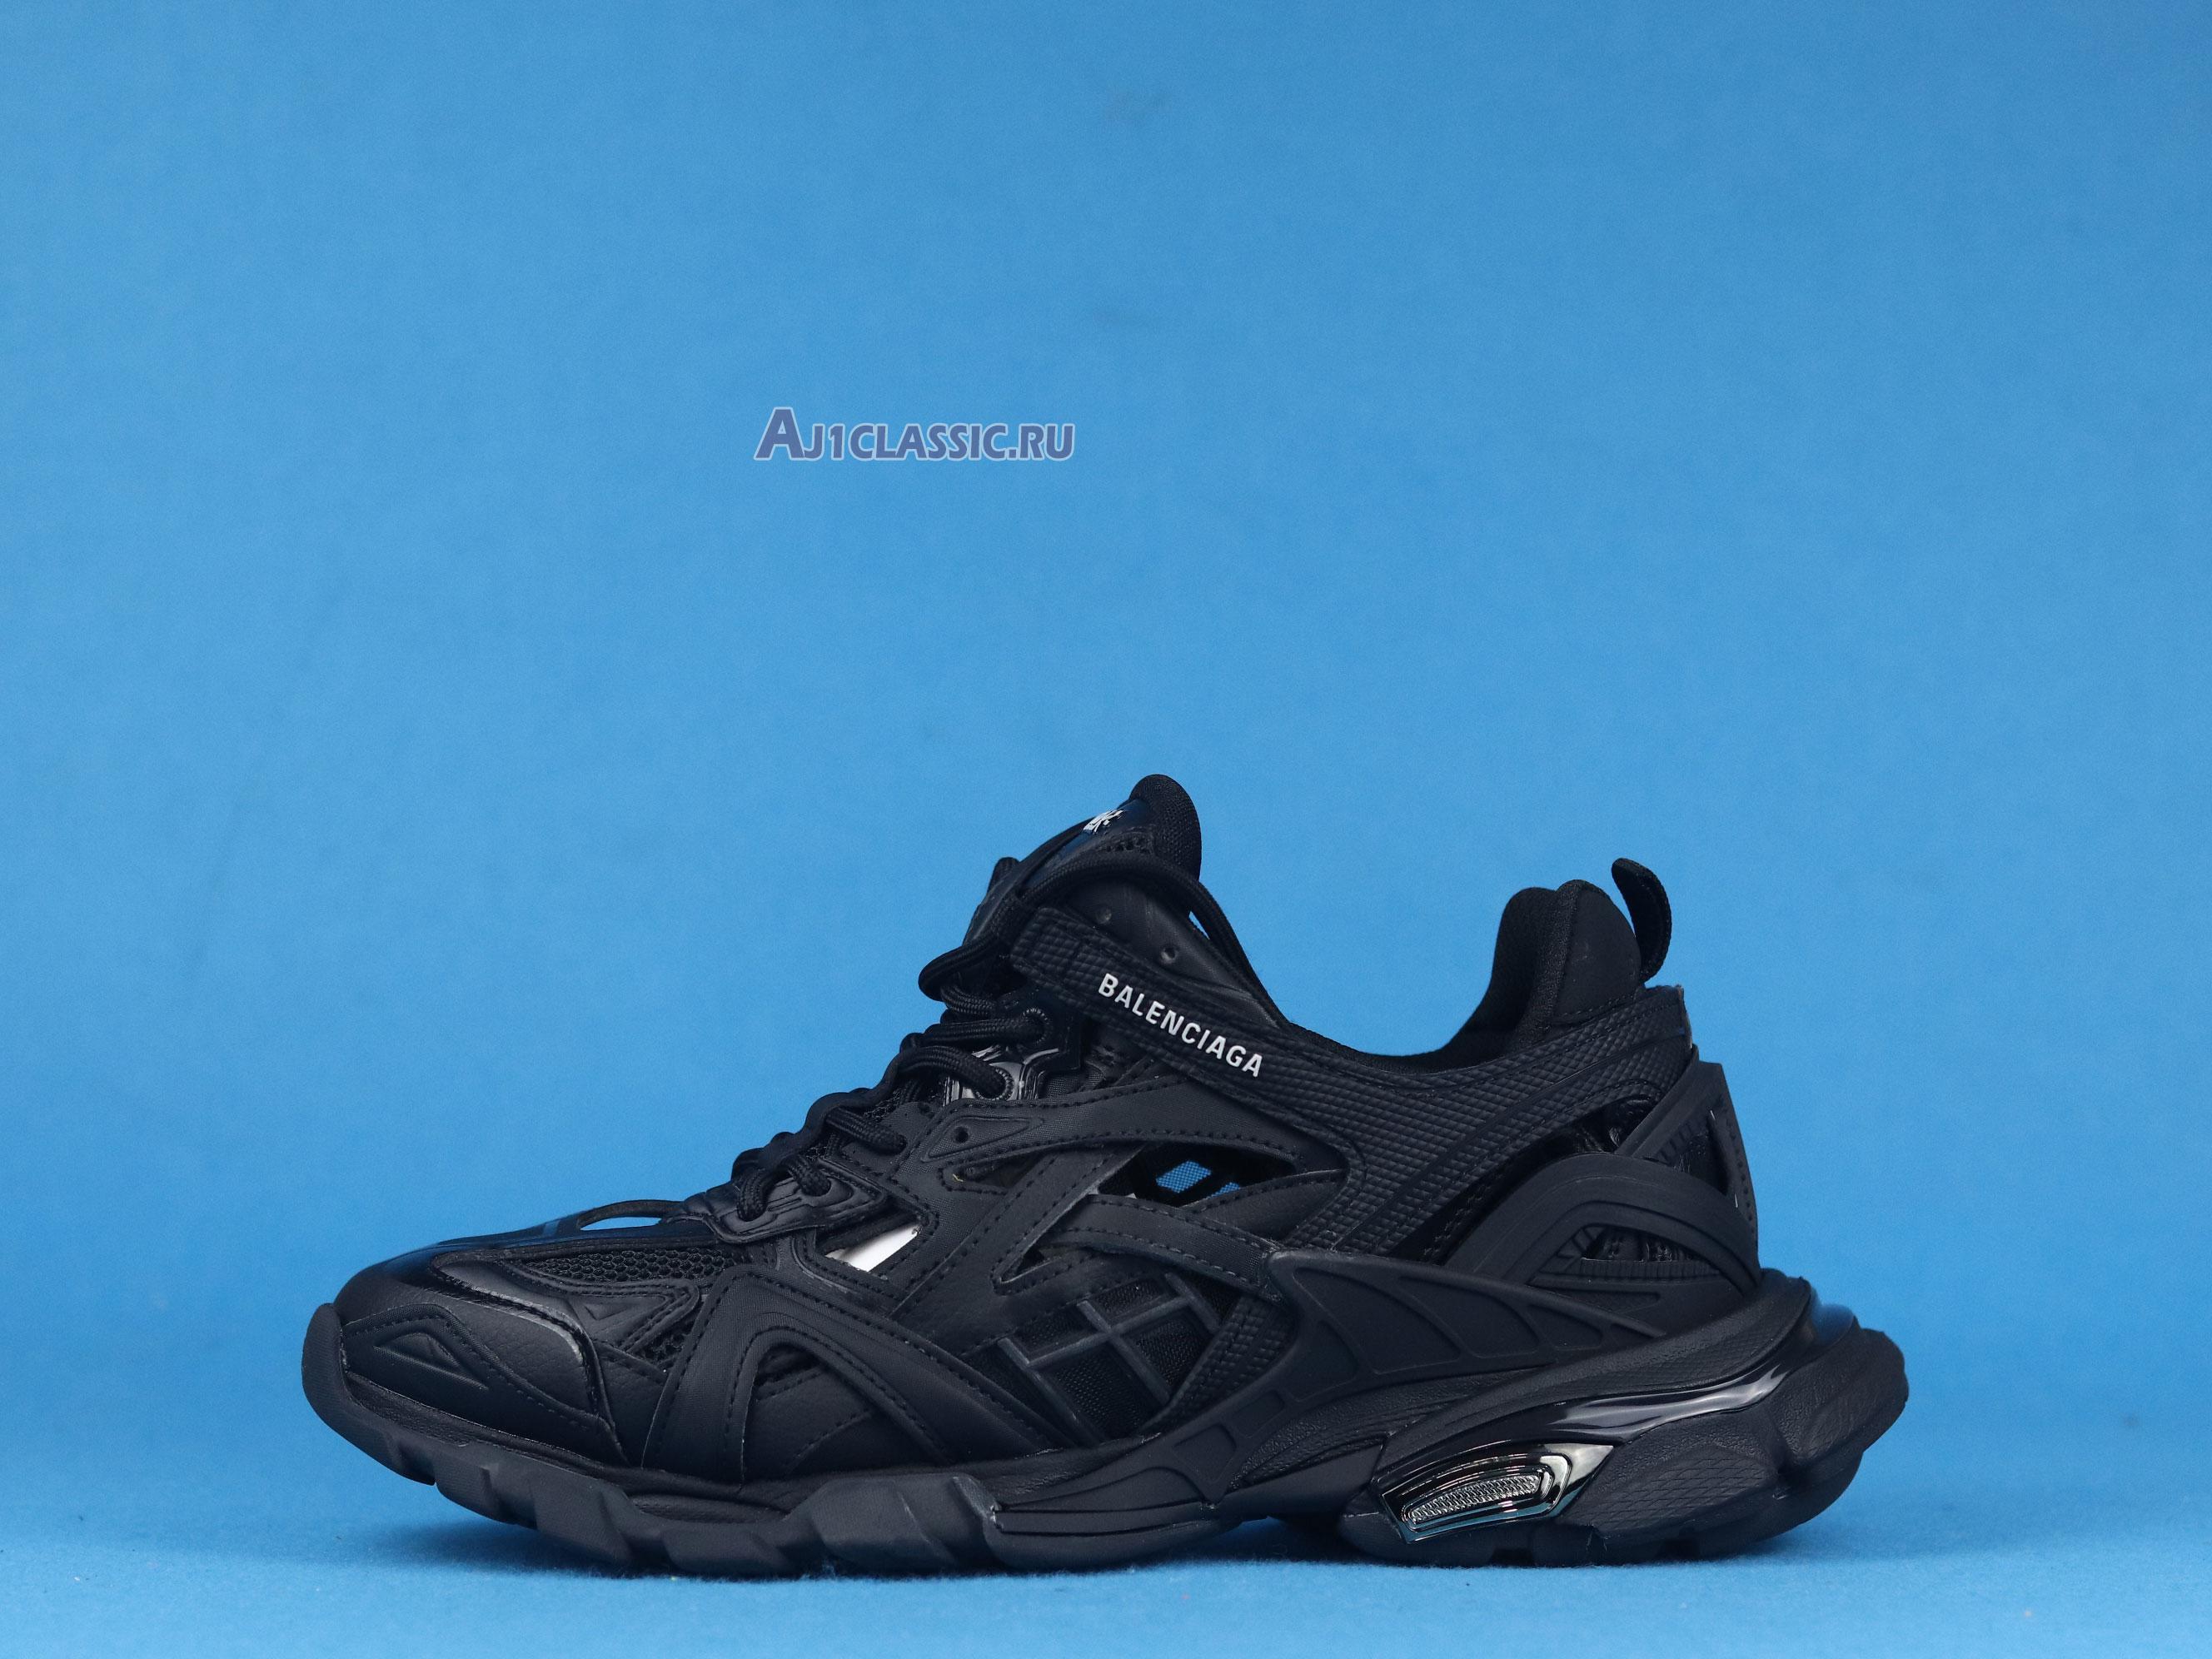 Balenciaga Track.2 Trainer Black 568614 W2GN1 1000 Black/Black Sneakers